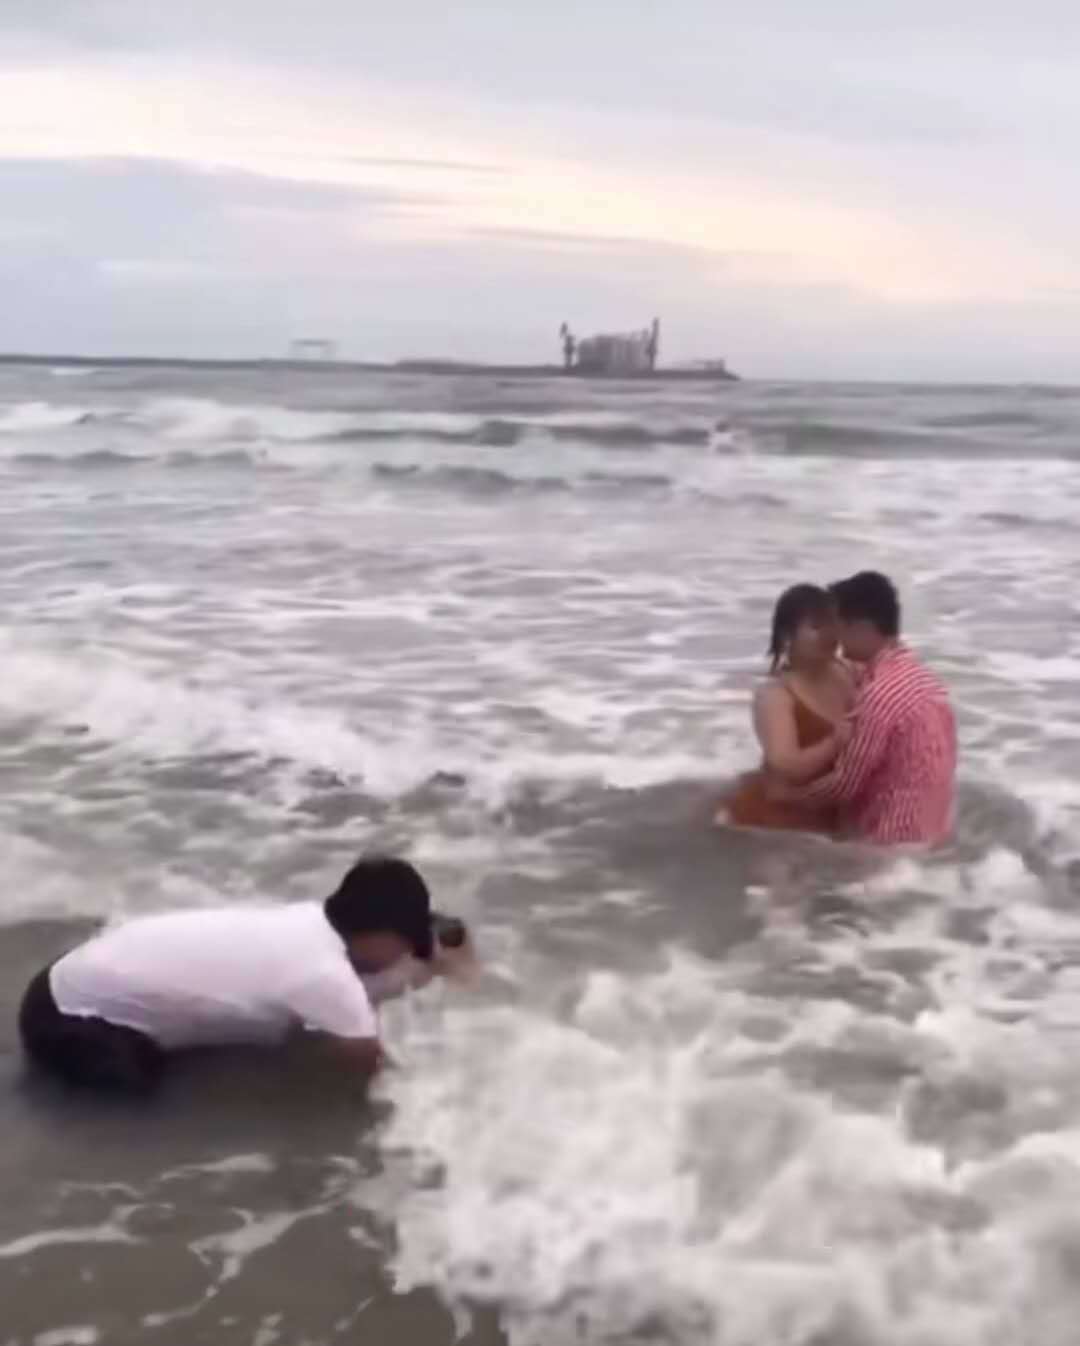 摄影师跪海里为新人拍照,一个月工资在海里泡